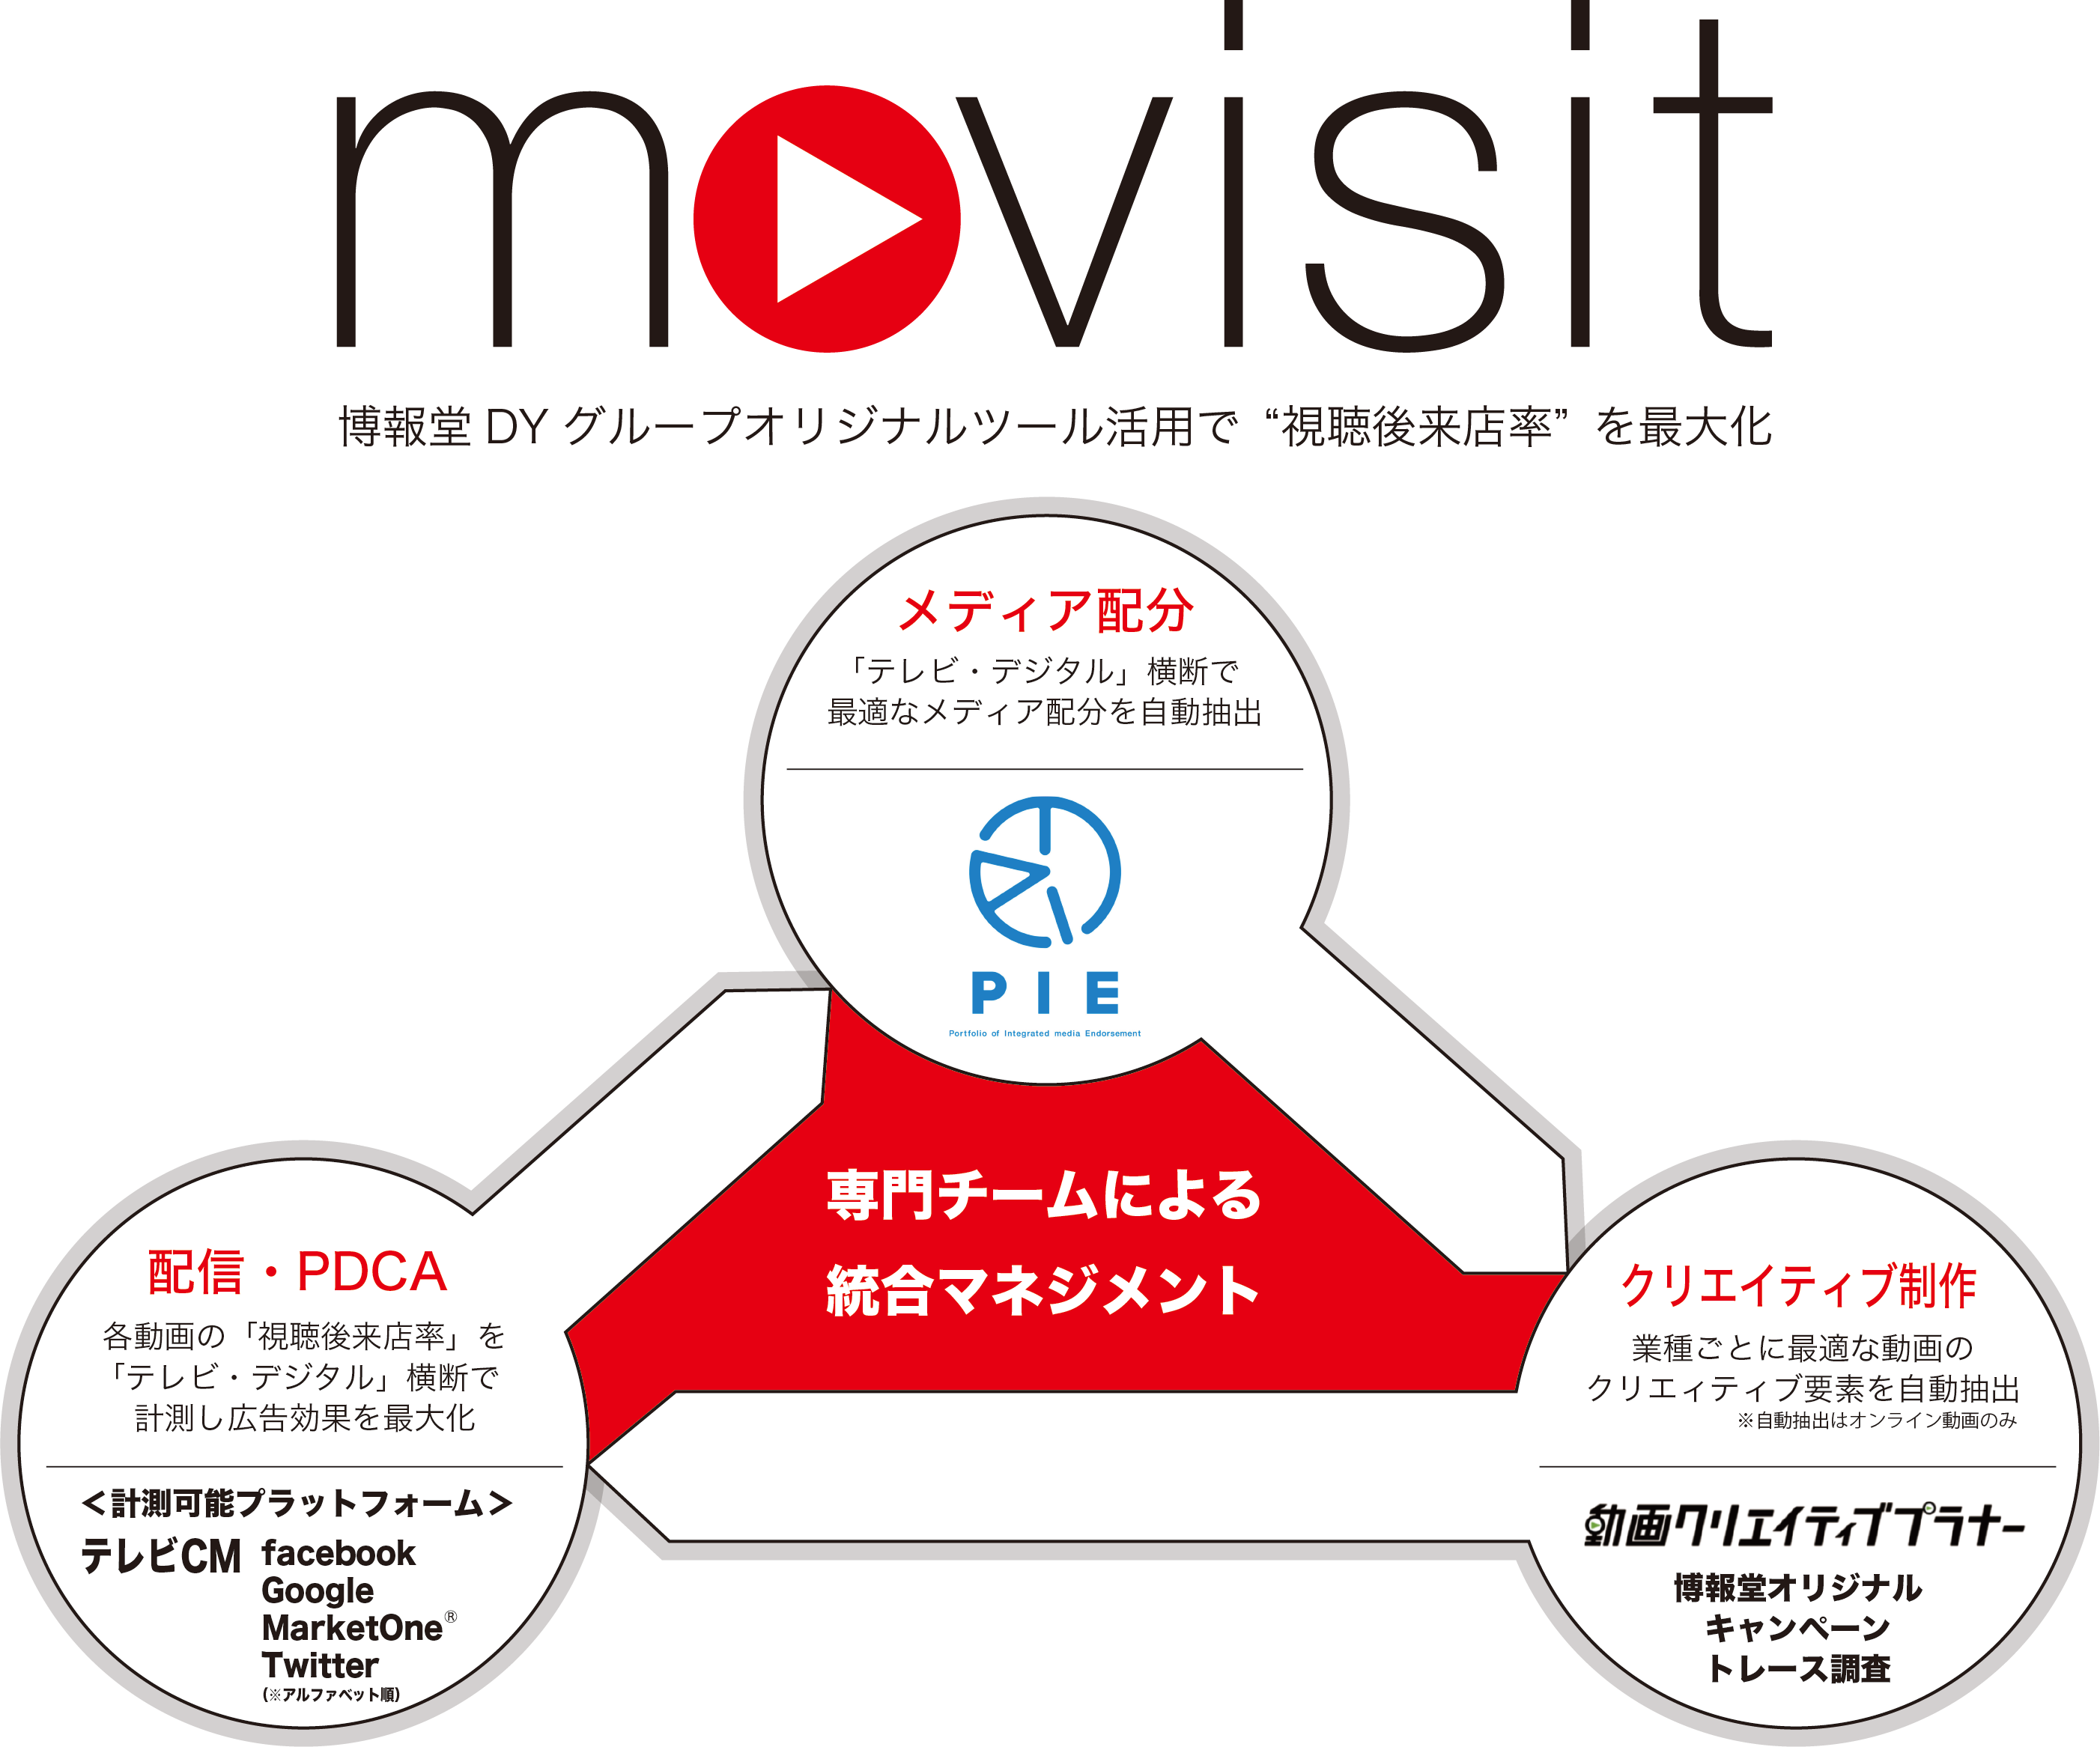 テレビcmも含めた動画広告の 視聴後来店率 を計測し テレビ デジタル 横断で来店効果の最大化を目指す専門チーム Movisit ムーヴィジット を始動 ニュースリリース 博報堂 Hakuhodo Inc